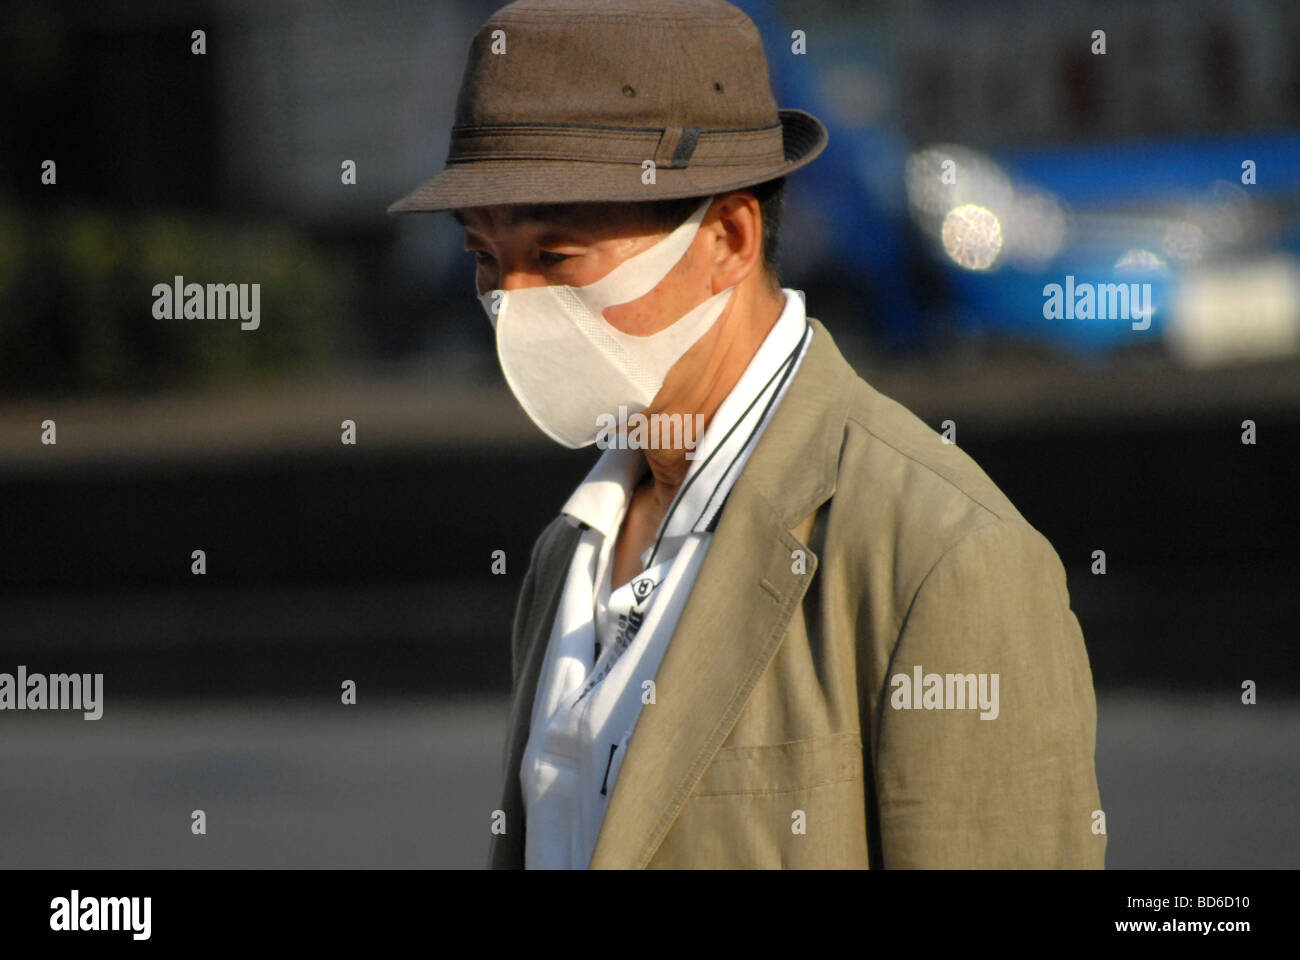 Giappone Tokyo: peste aviaria pandemia di influenza il livello di allarme 6. 2009/05/20 Foto Stock